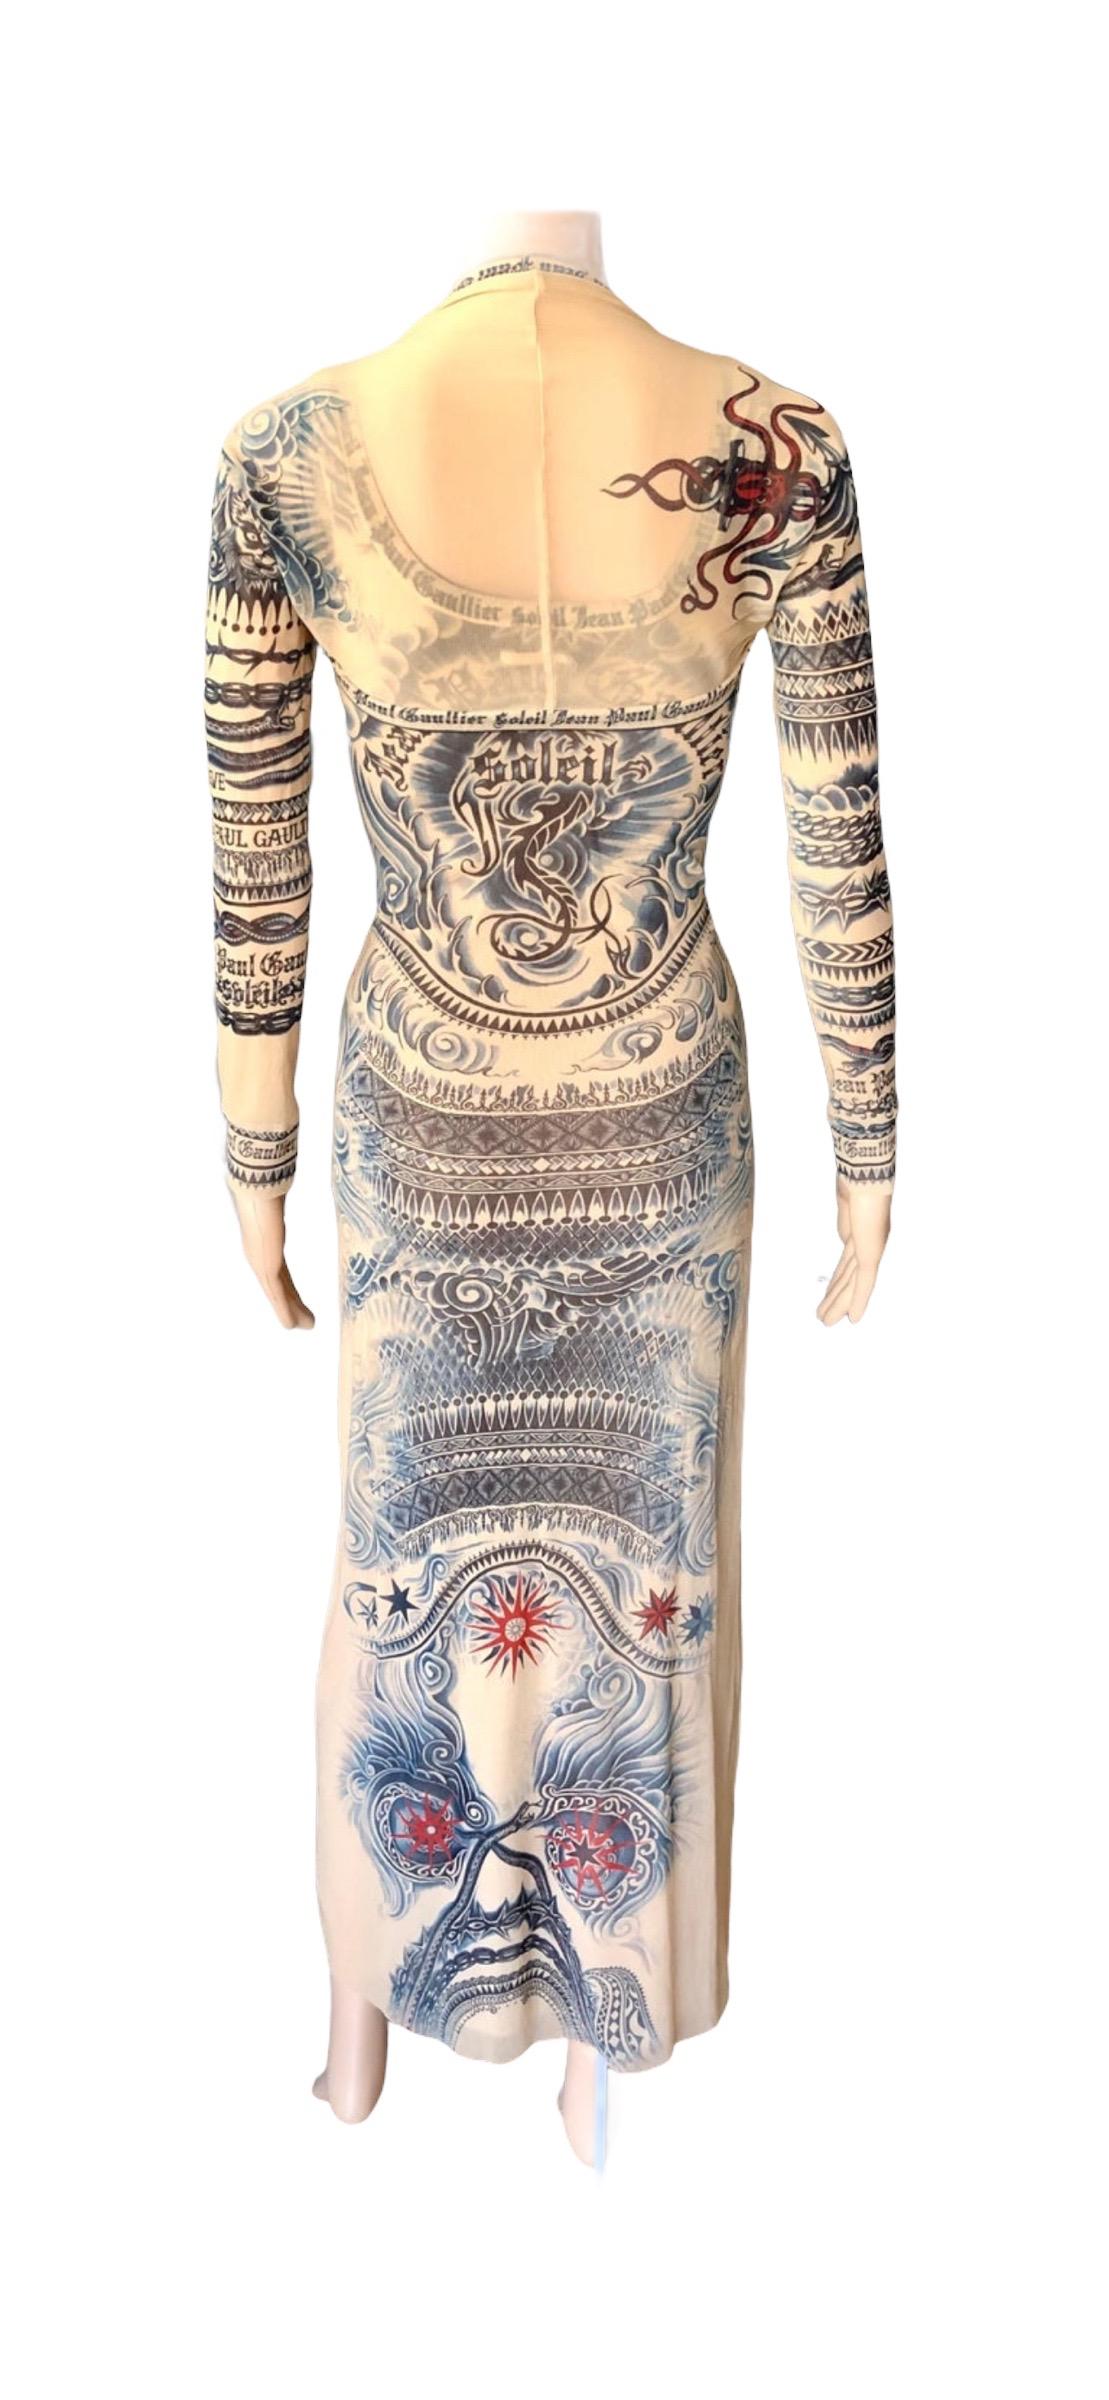 Women's or Men's Jean Paul Gaultier Soleil Vintage Tattoo Bodycon Mesh Bolero Dress 2 Piece Set